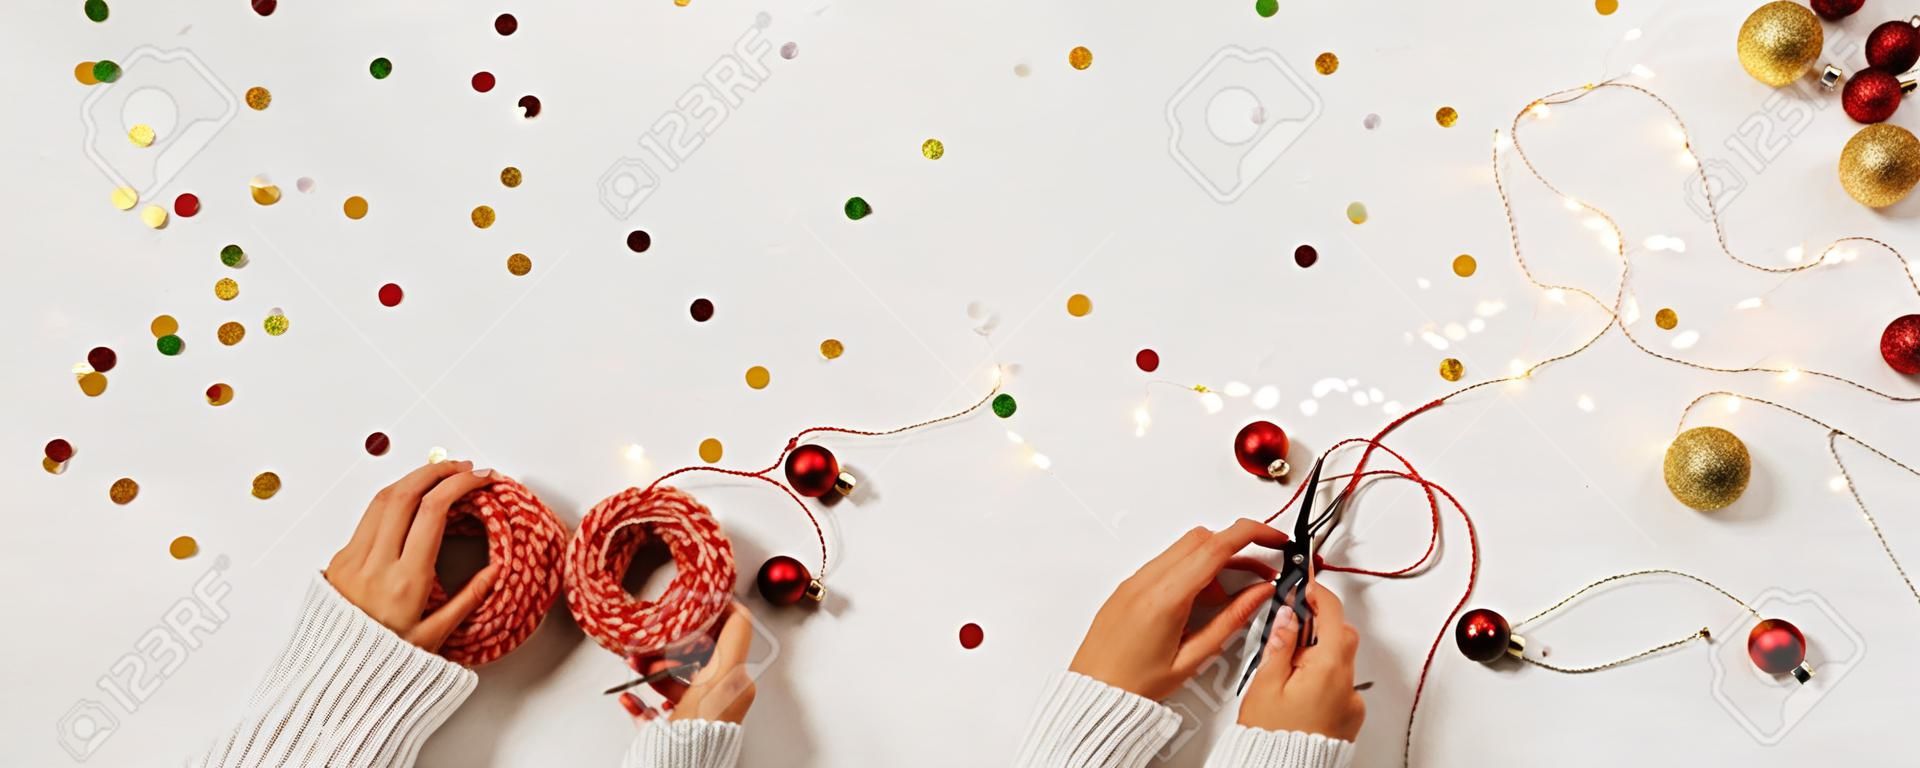 Frauenhände in einem Pullover packen eine Geschenkbox für das neue Jahr. Kreatives Weihnachtslayout auf weißem Hintergrund mit Konfetti und Platz für Text.